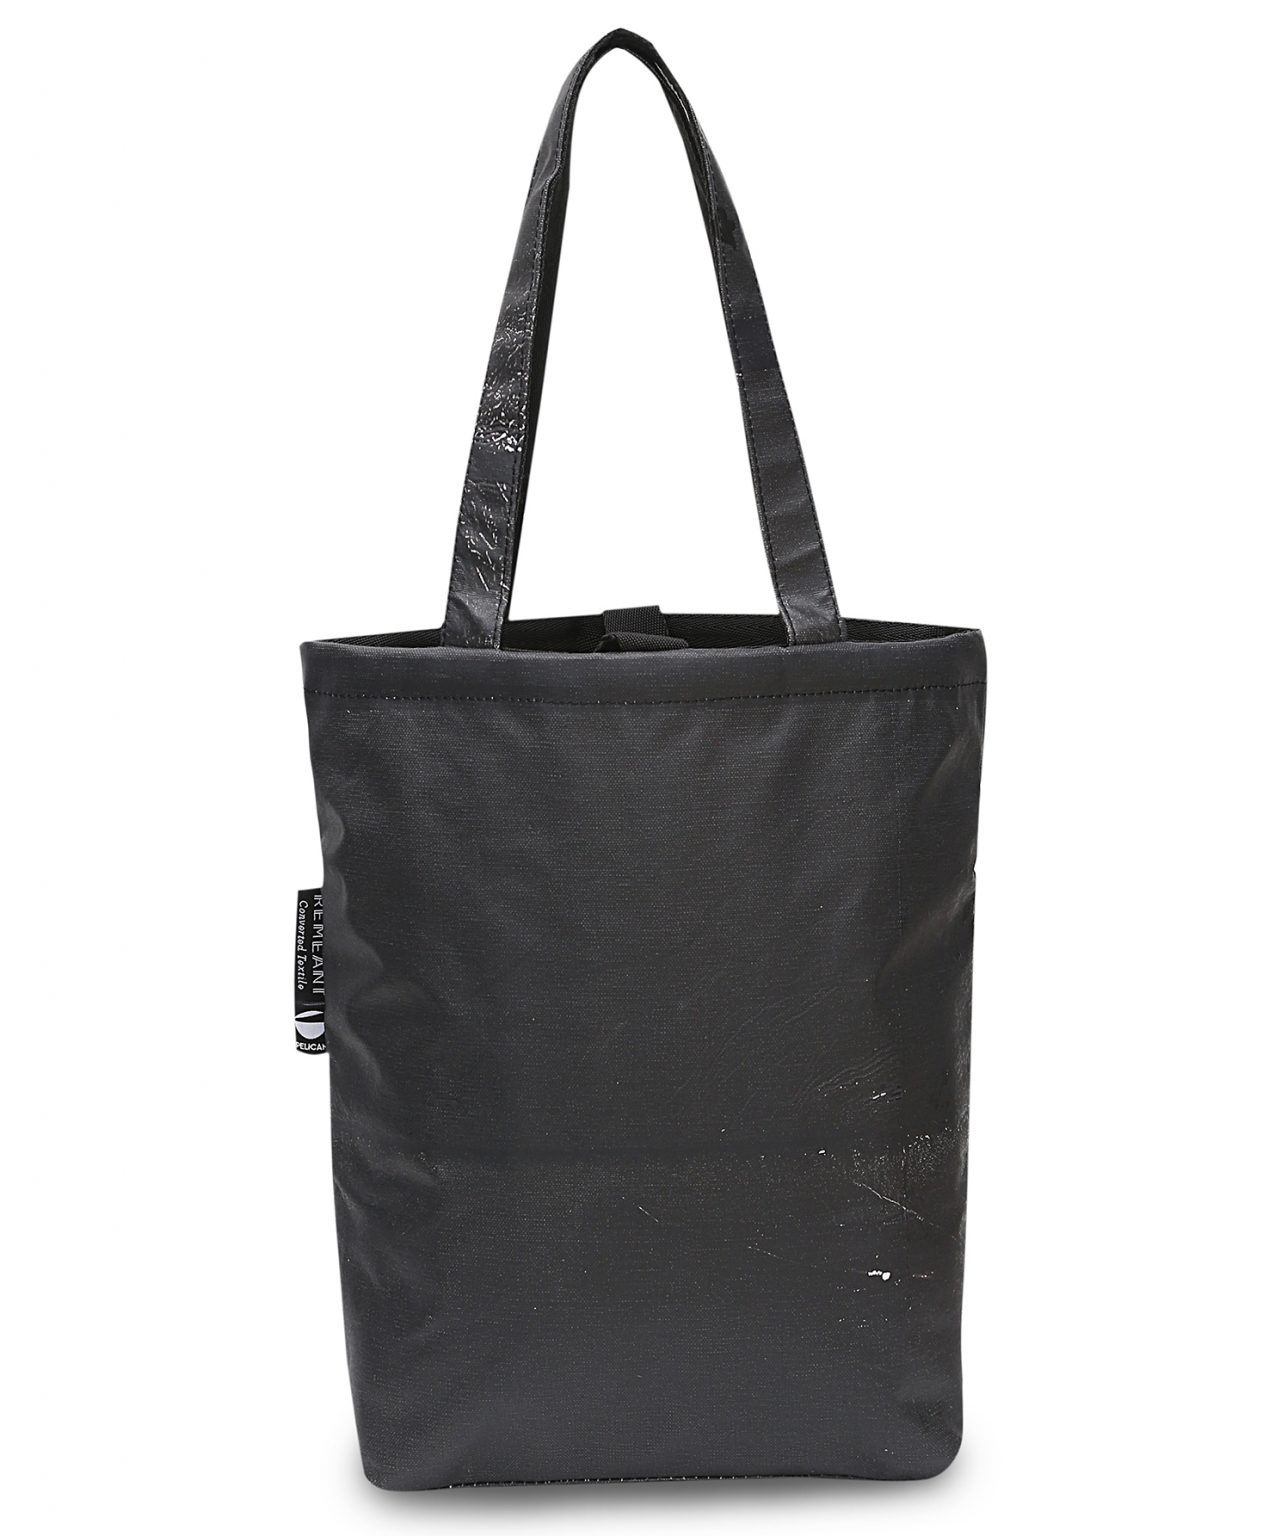 RE-Plain Tote Bag Black - Remeant